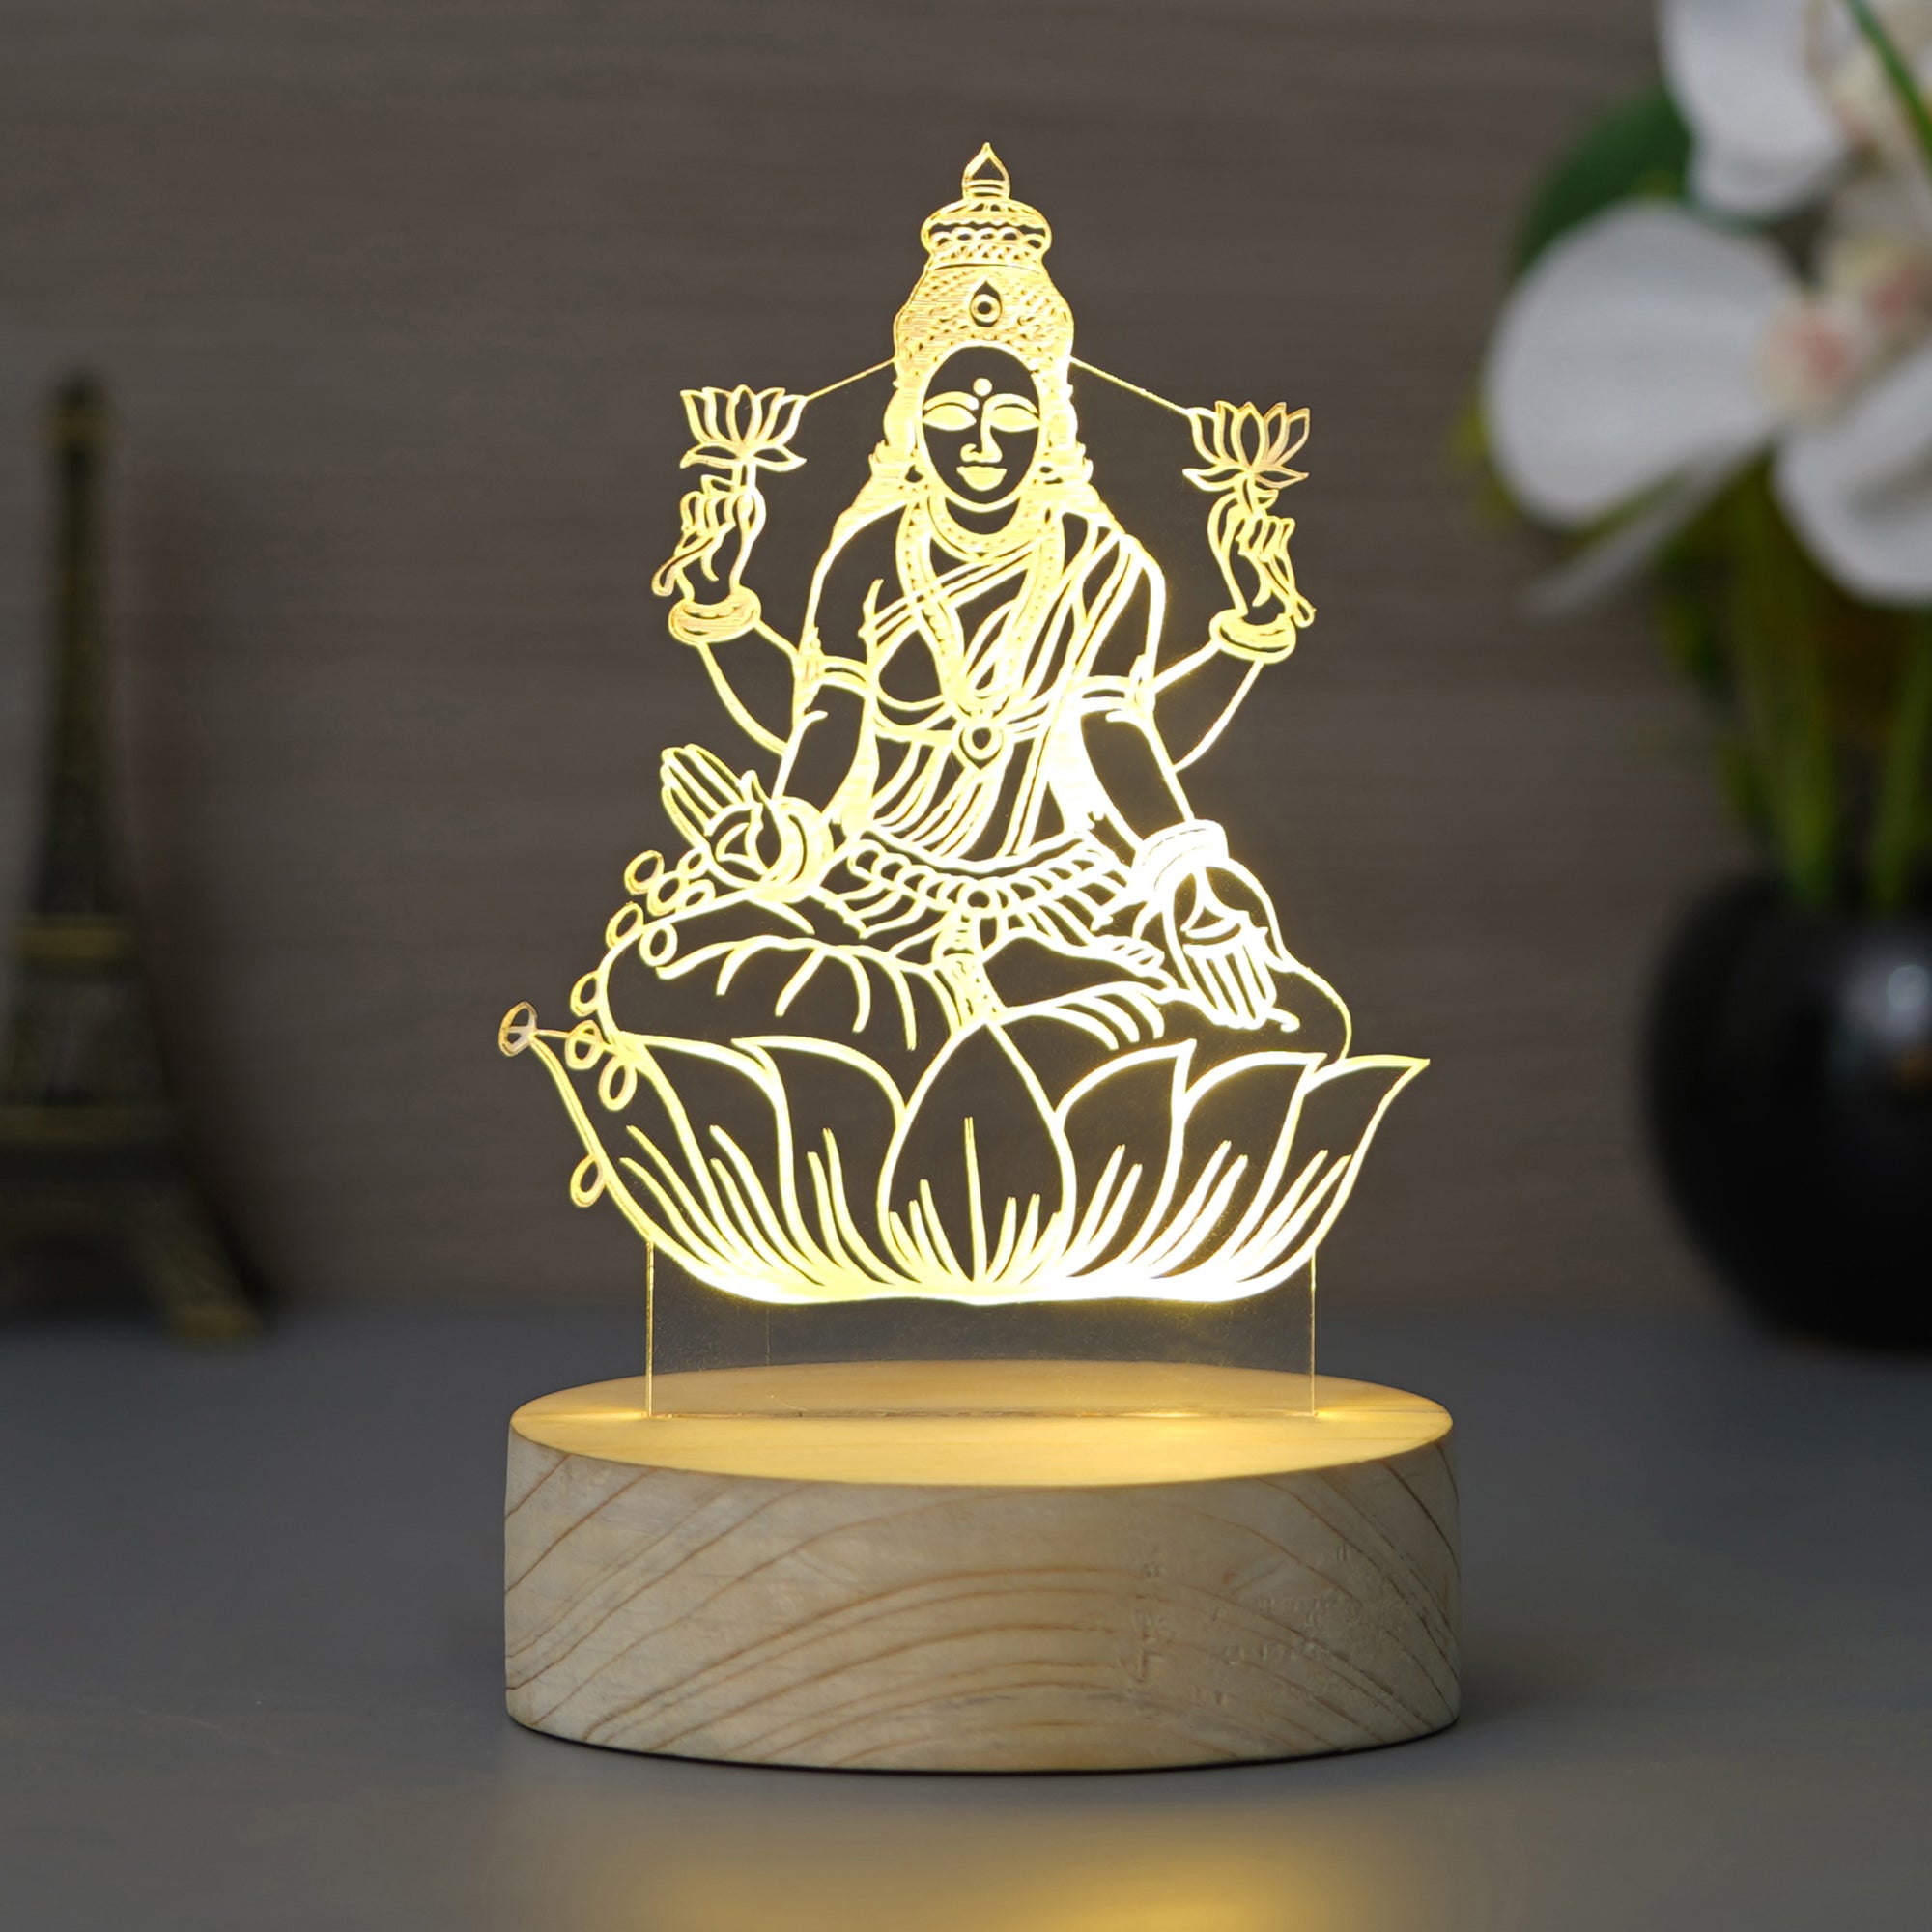 Goddess Laxmi Design Carved on Acrylic & Wood Base Night Lamp